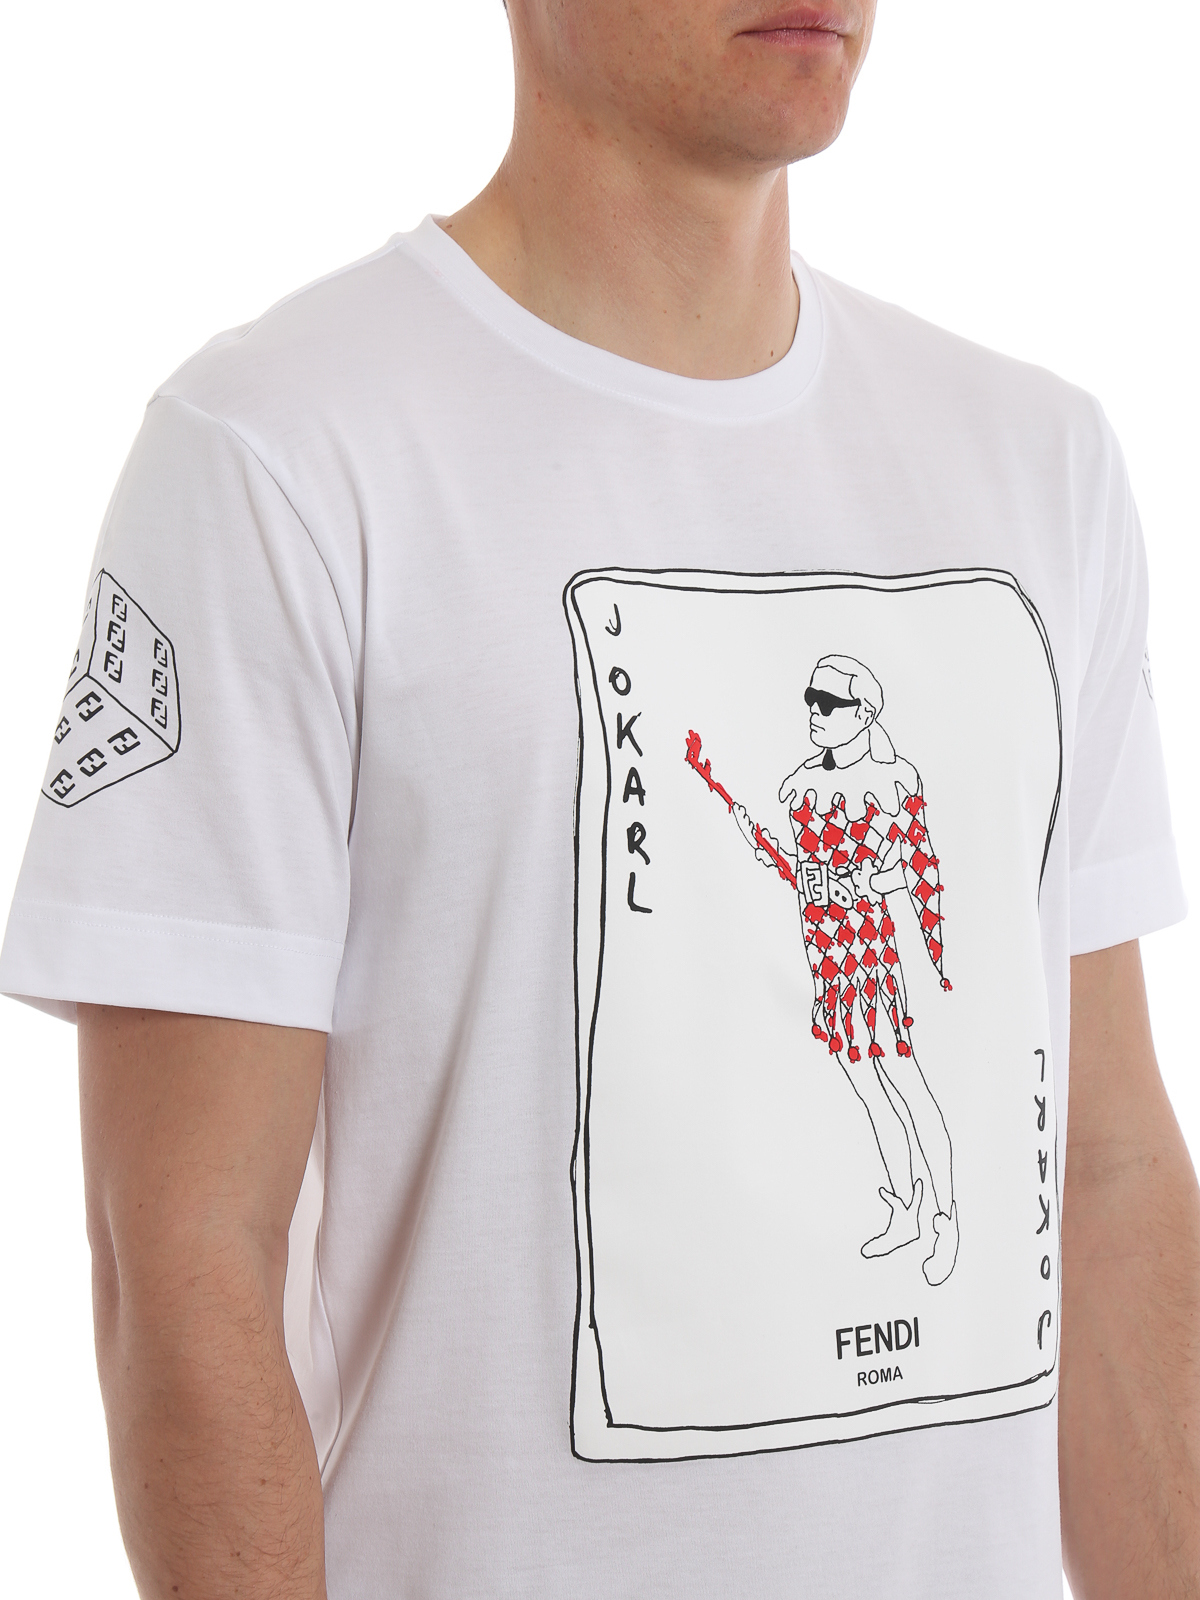 Fendi - Jokarl print white T-shirt - تی 